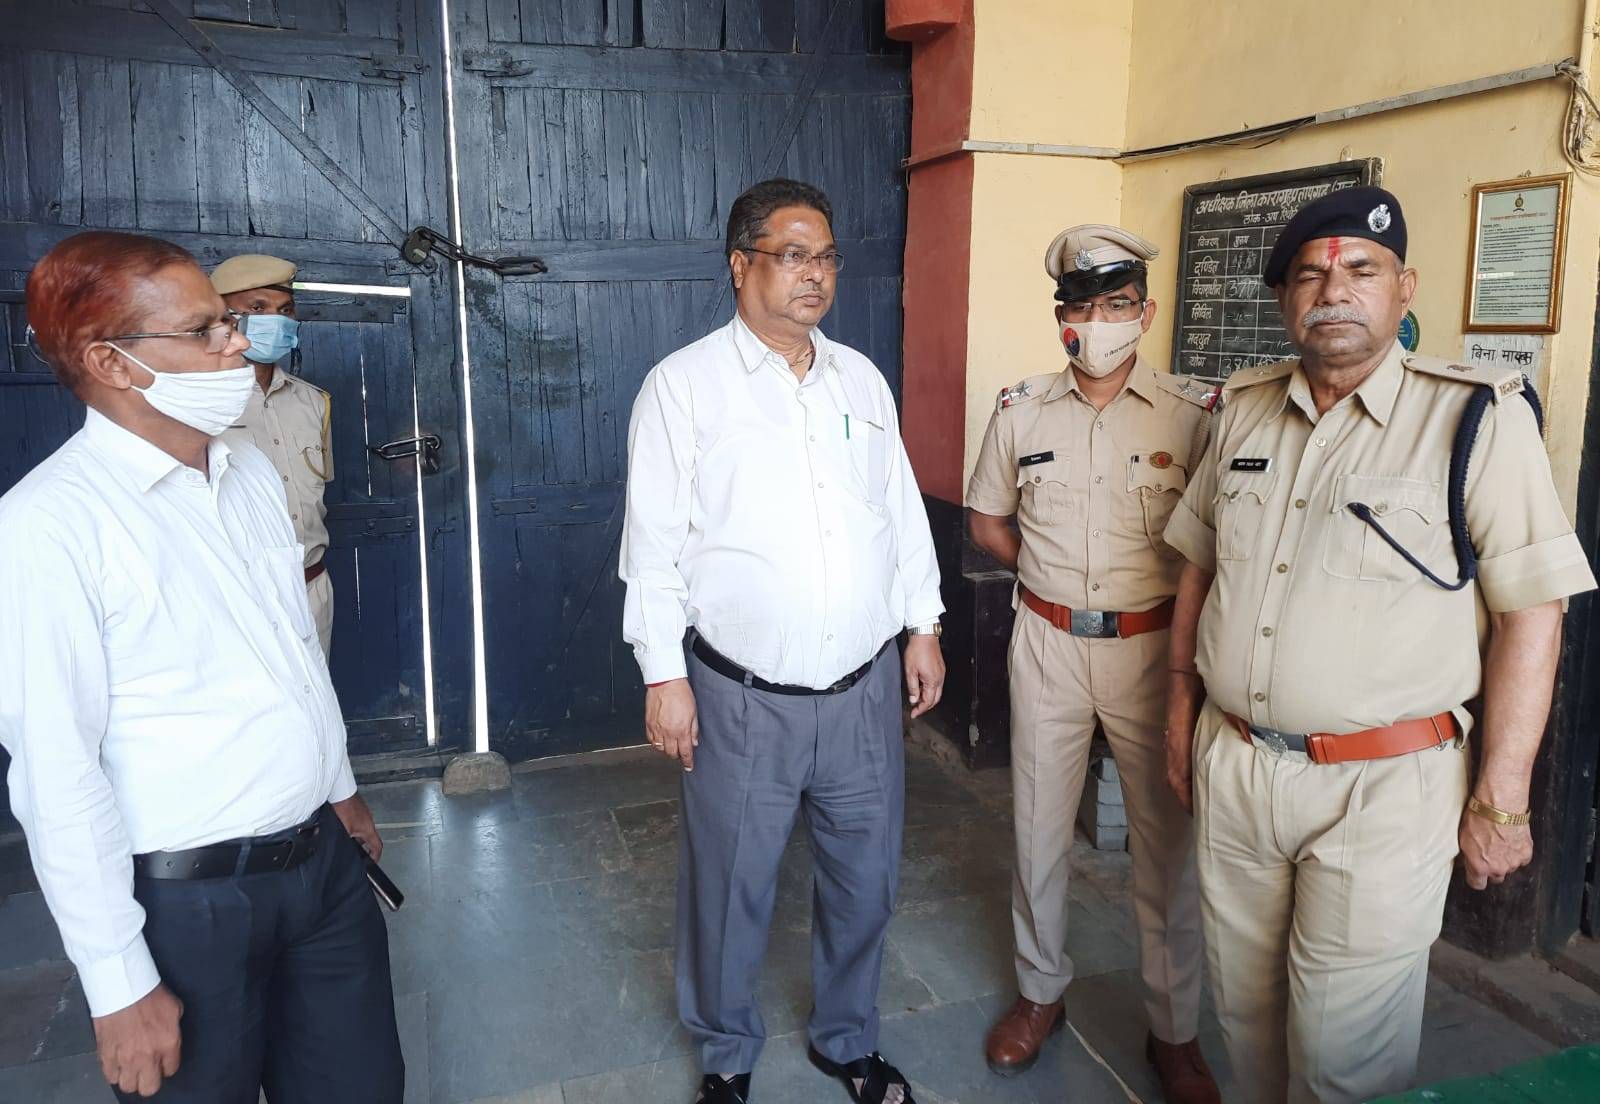 pratapgarh jails क्षमता से अधिक बंदी होंगे अन्य जेलों में शिफ्ट